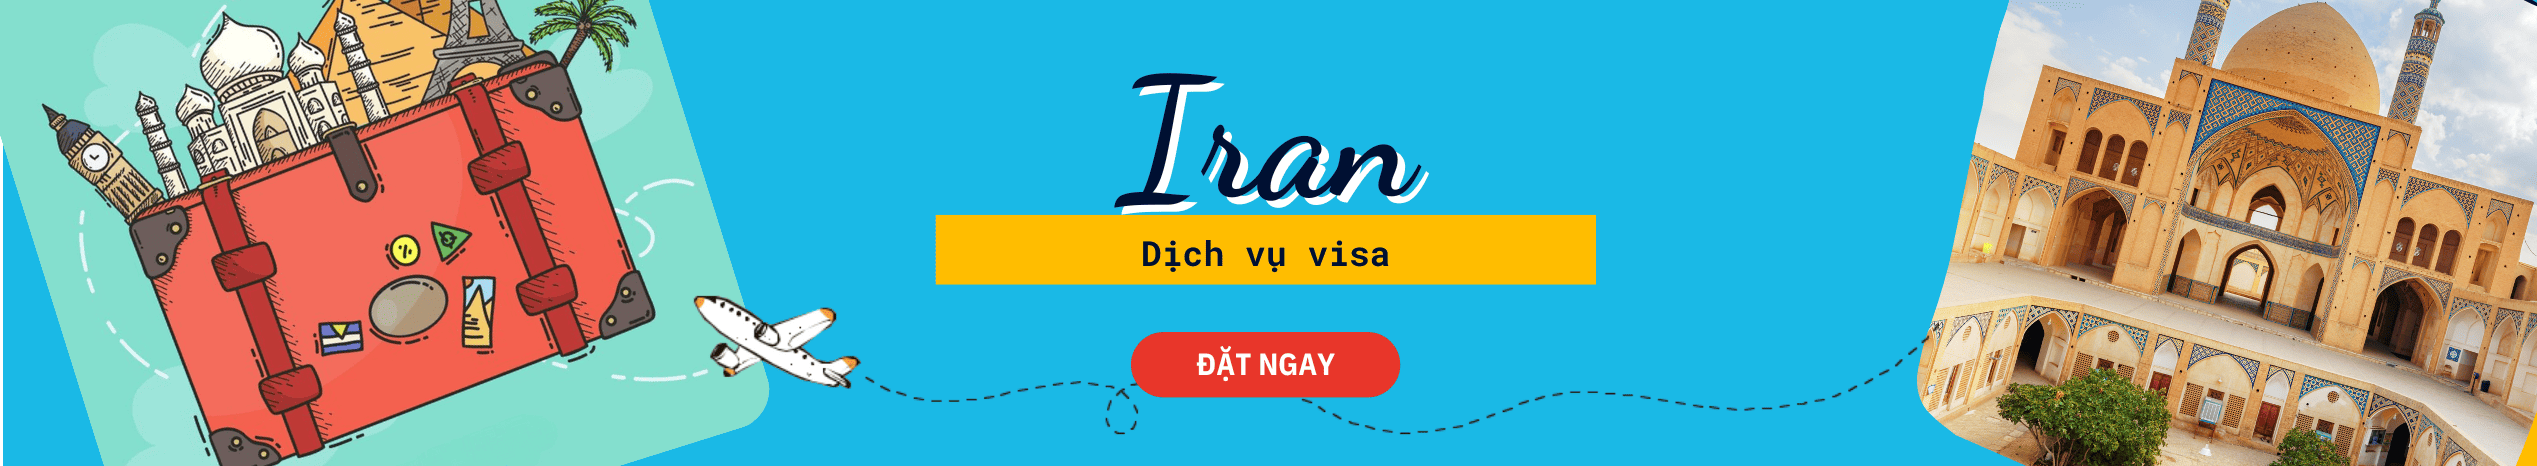 Dịch vụ hỗ trợ xin Visa Iran du lịch trọn gói